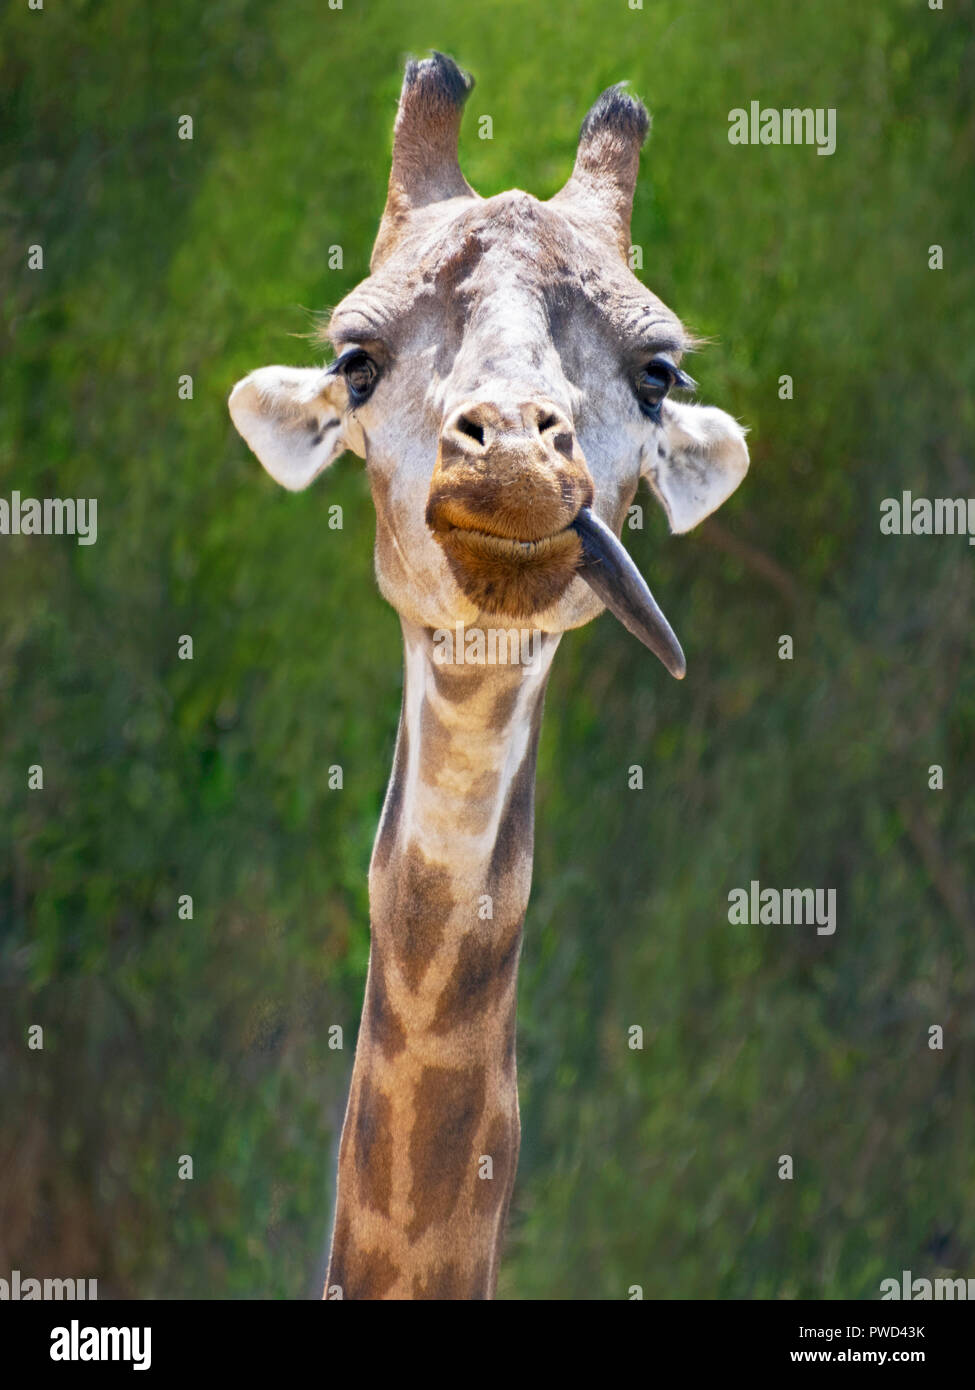 Ein lustiges Dumme suchen Jugendliche giraffe seine Zunge heraus auf eine unscharfe meliert grün Hintergrund Stockfoto